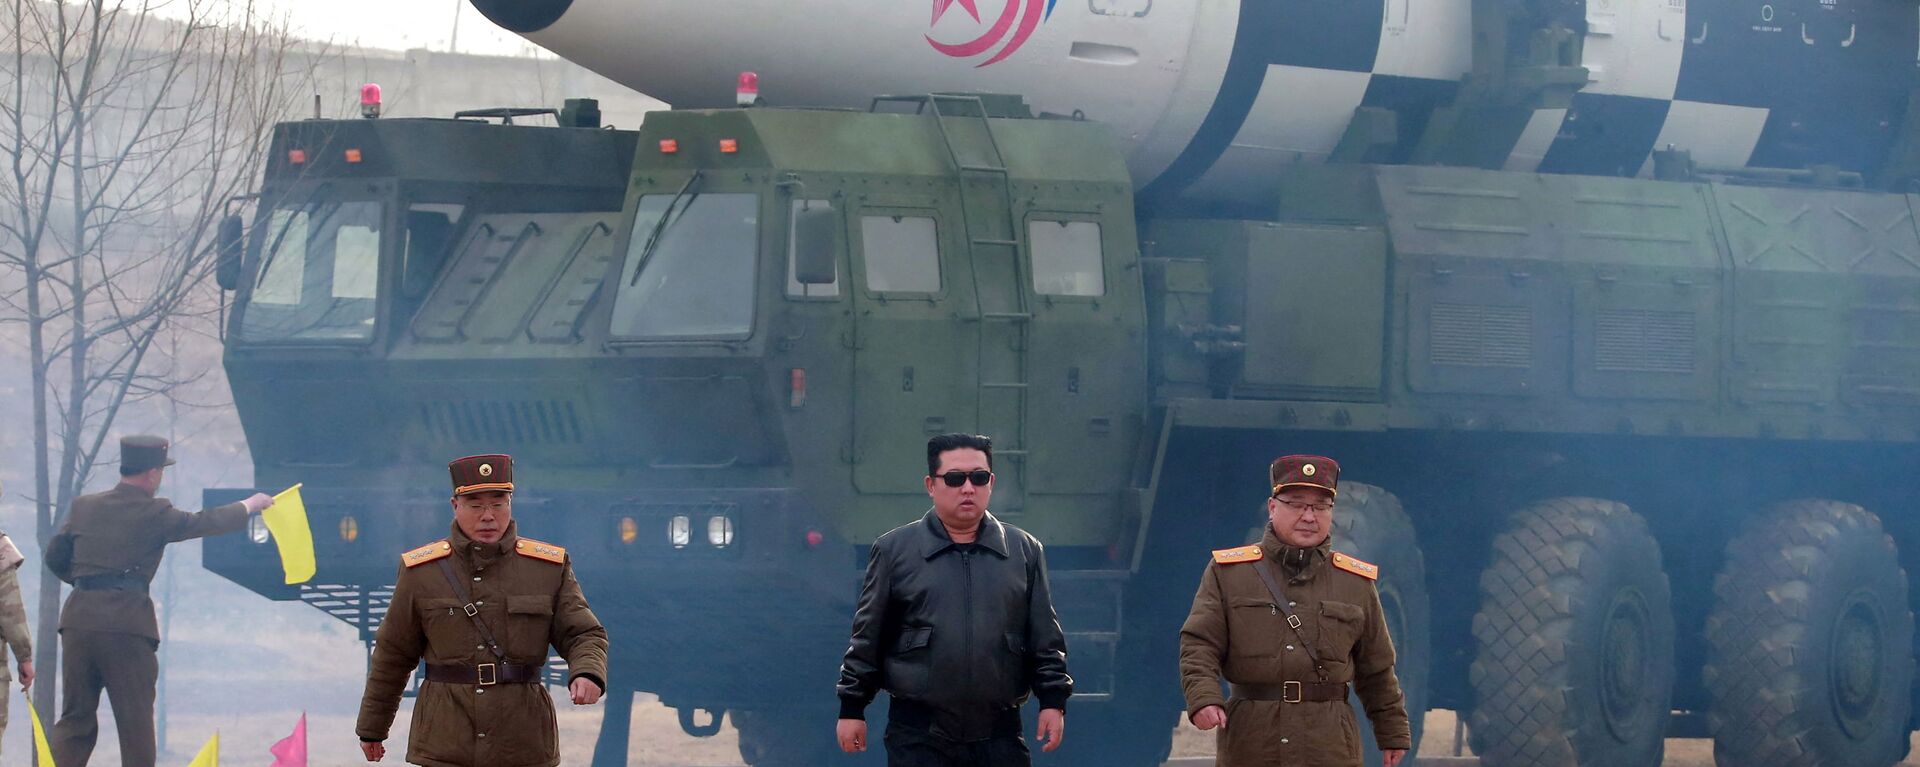 زعيم كوريا الشمالية كيم جونغ أون على خلفية ما نشرته وسائل إعلامية أنه نوع جديد من الصواريخ الباليستية العابرة للقارات، في هذه الصورة التي نشرتها وكالة الأنباء المركزية الكورية الشمالية  في 24 مارس 2022. - سبوتنيك عربي, 1920, 21.04.2022